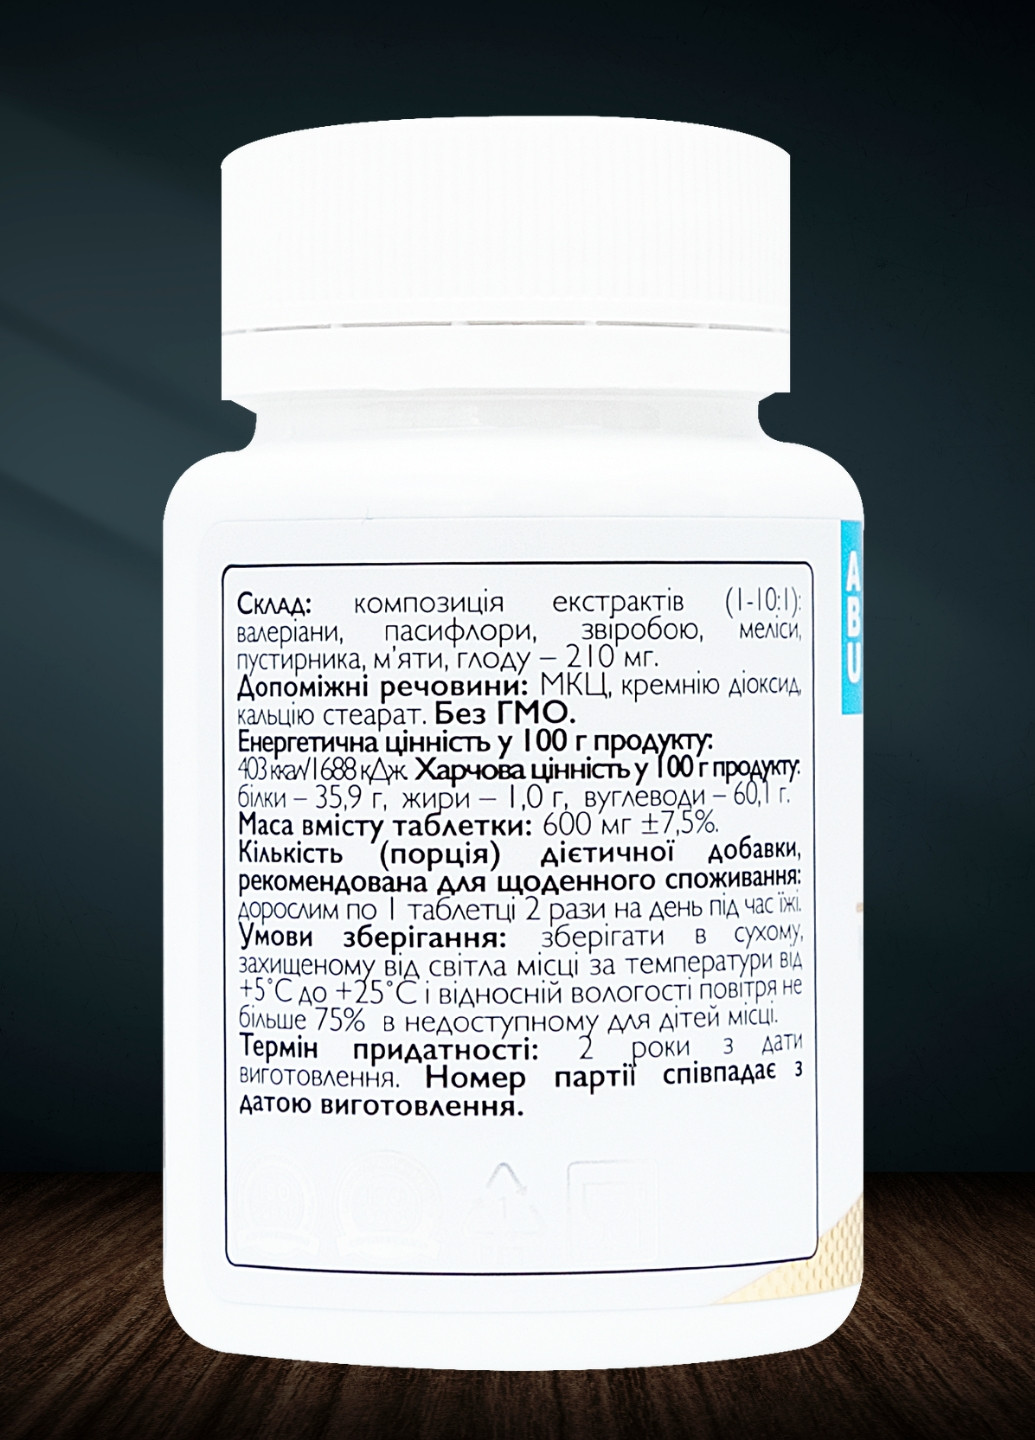 Успокаивающий комплекс Antistress complex 60 таблеток | Устранение тревожности, беспокойства и нервного напряжения ABU (All Be Ukraine) (277813530)